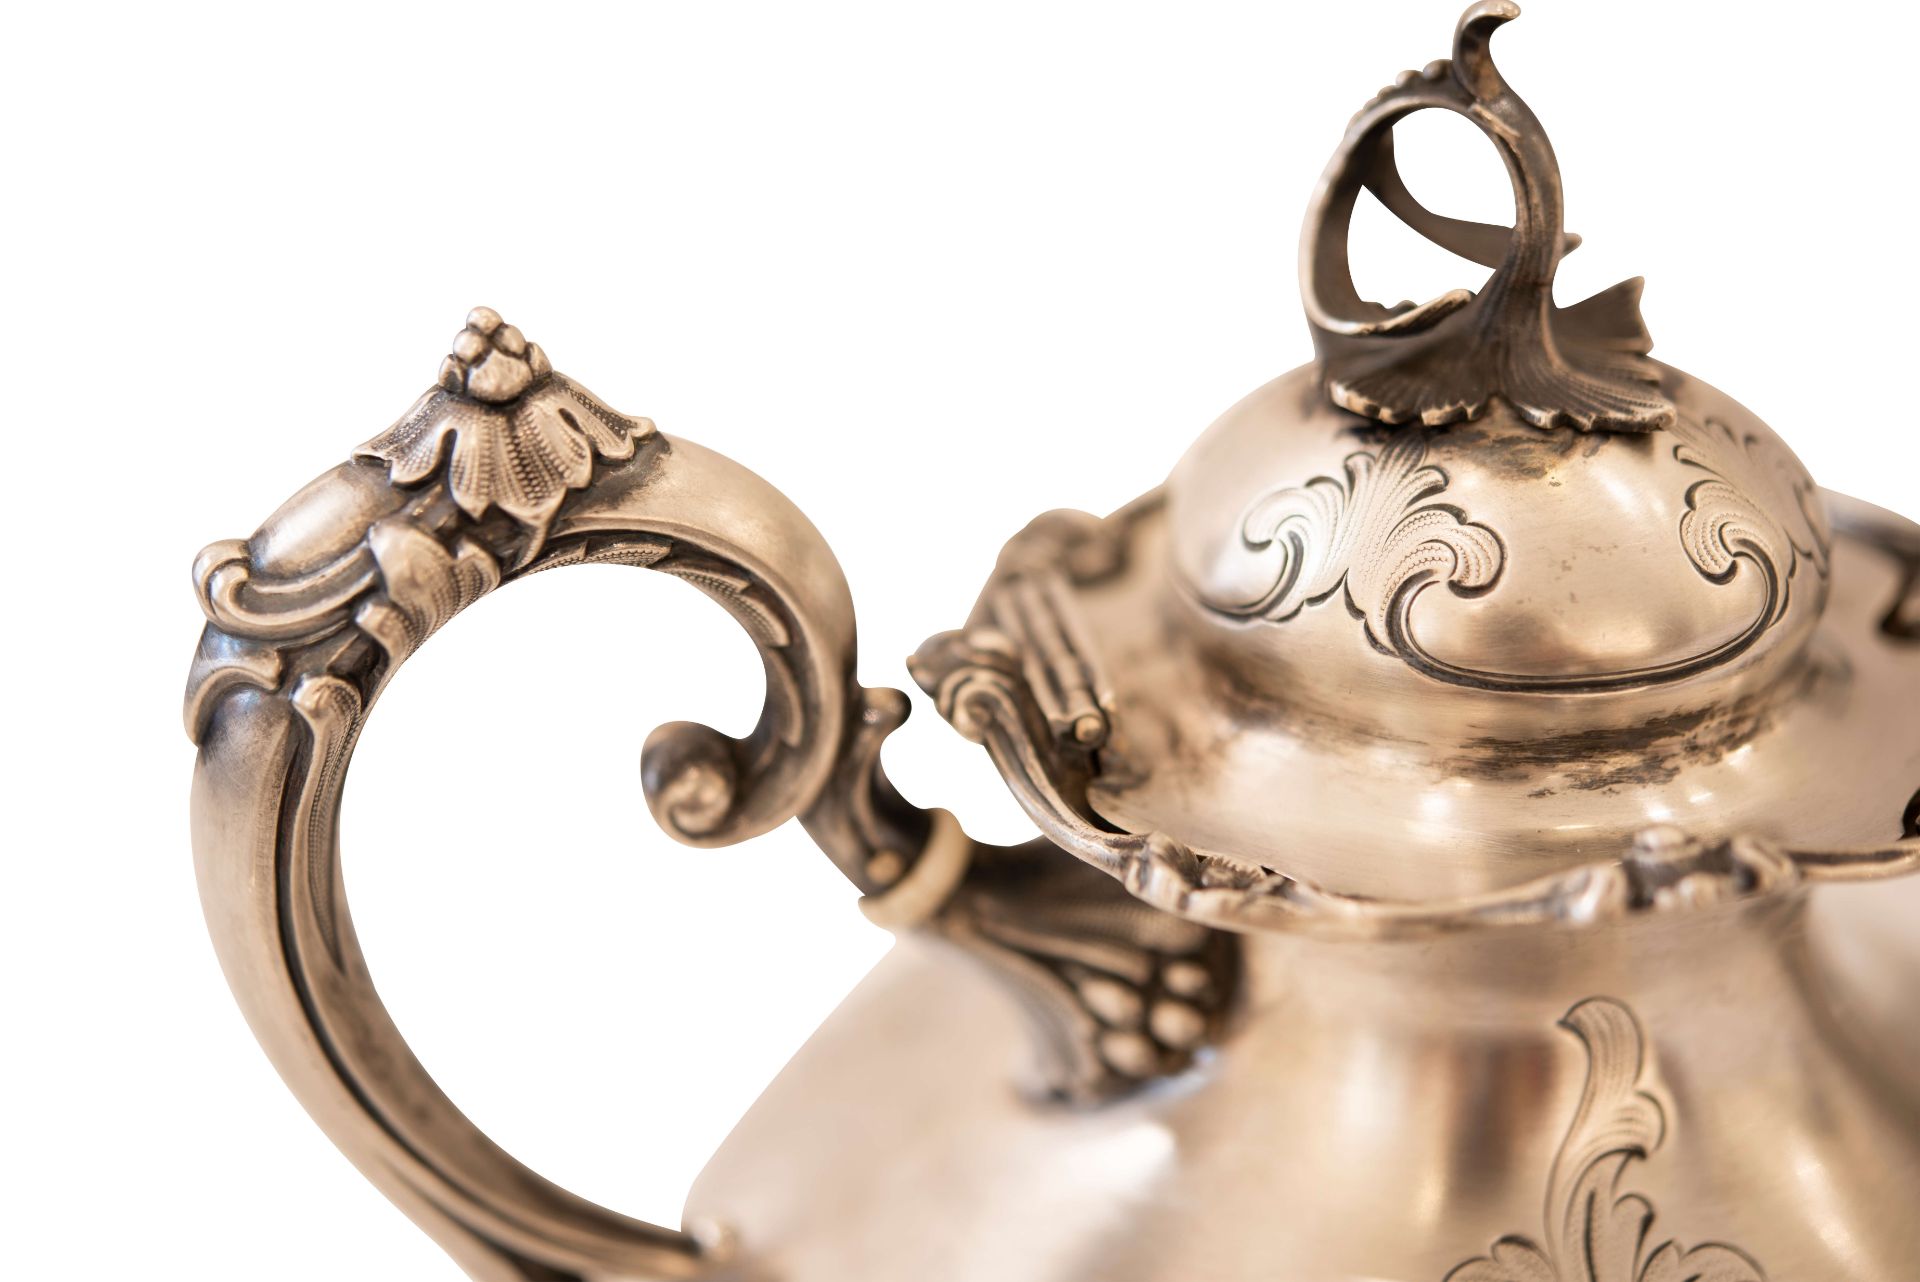 Silberteekanne mit vier Füßen |Silver Teapot with Four Feet - Image 3 of 7